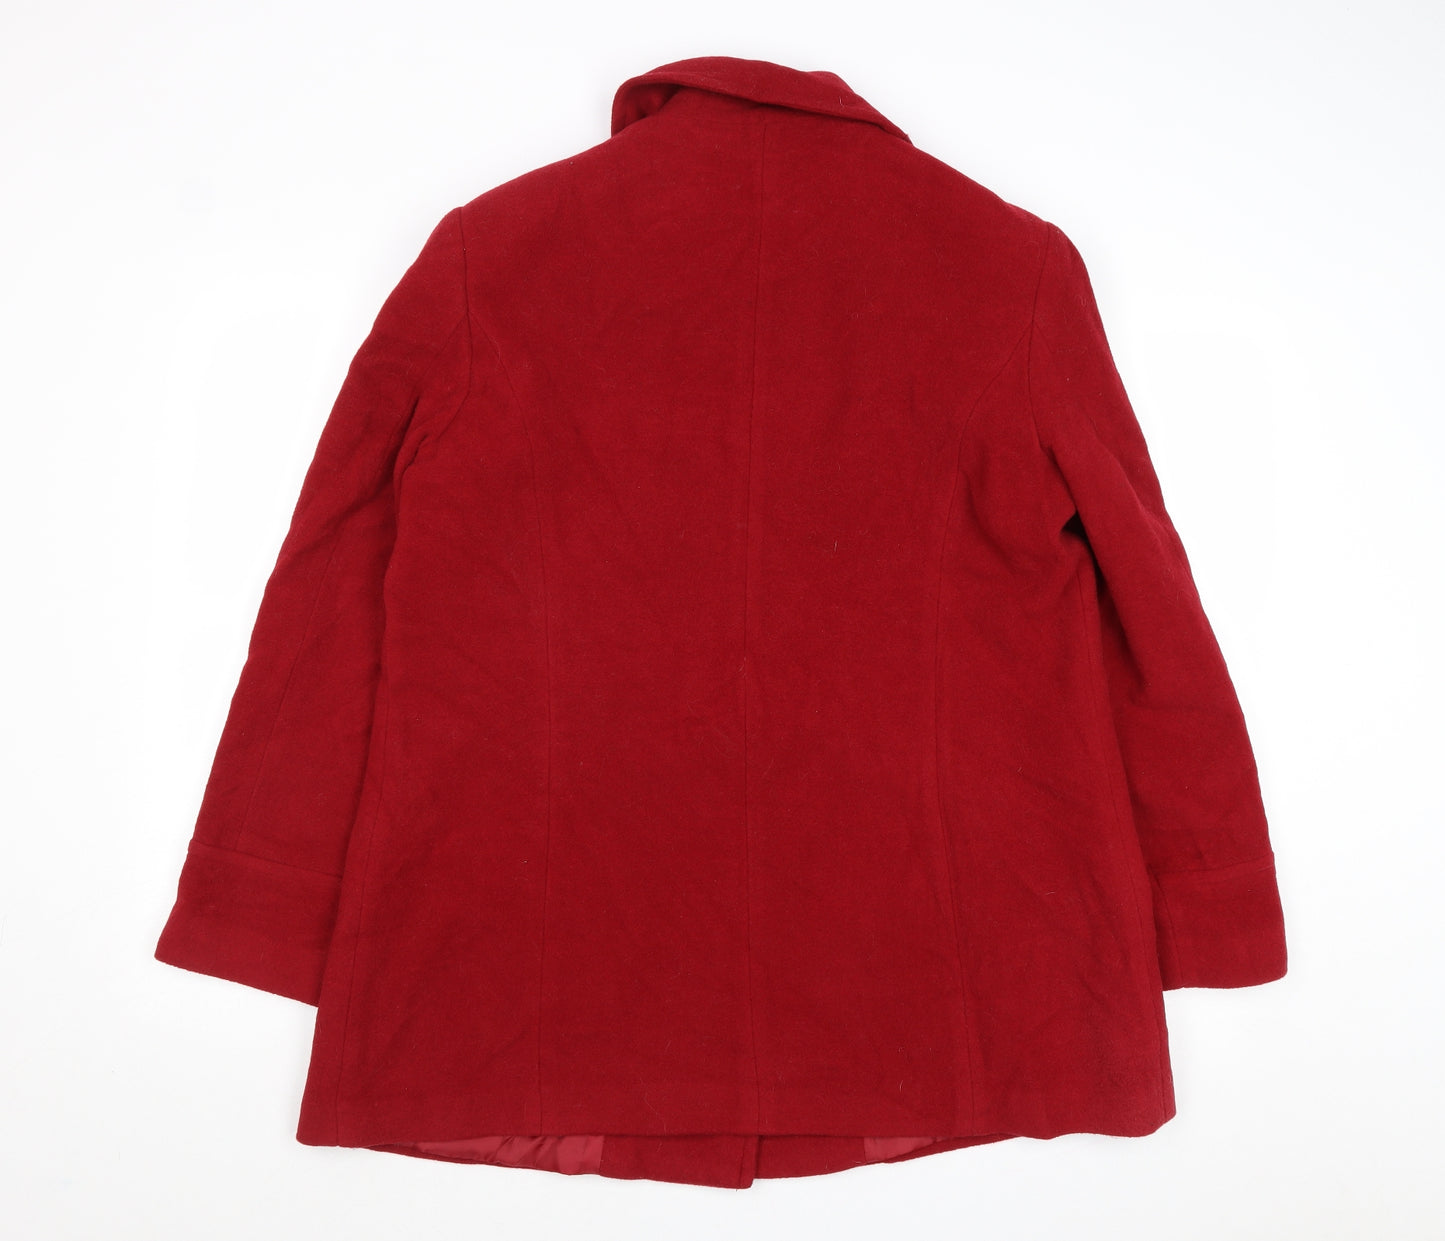 EWM Womens Red Jacket Size 14 Toggle